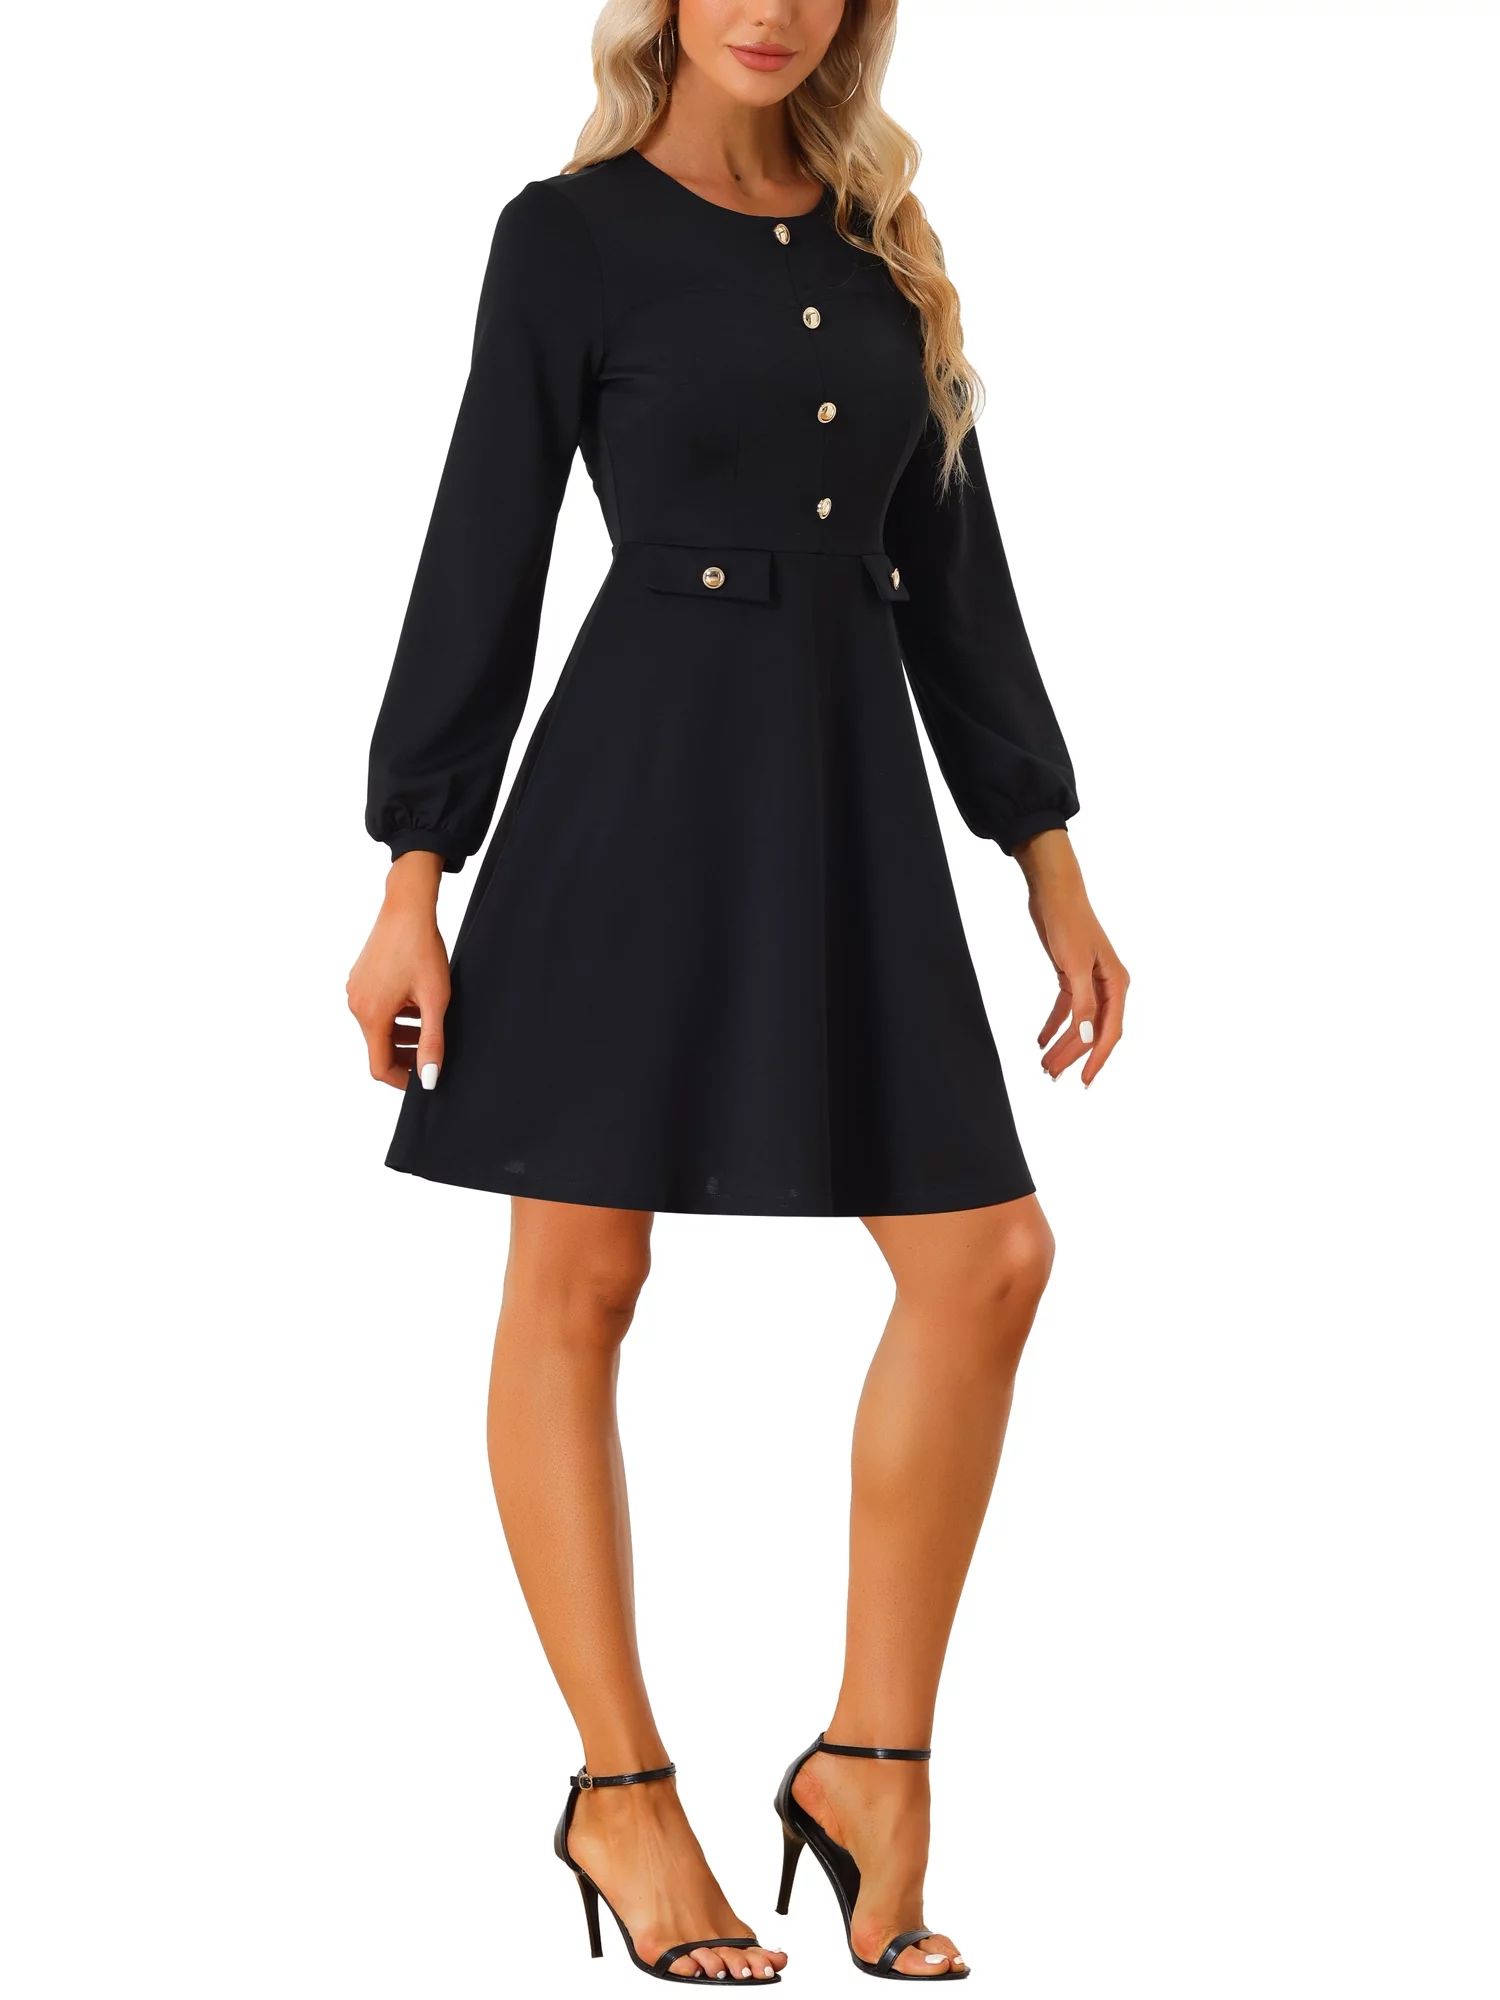 Allegra K Work Office Dress for Women's Contrast Button Decor Long Sleeve Dresses | Walmart (US)